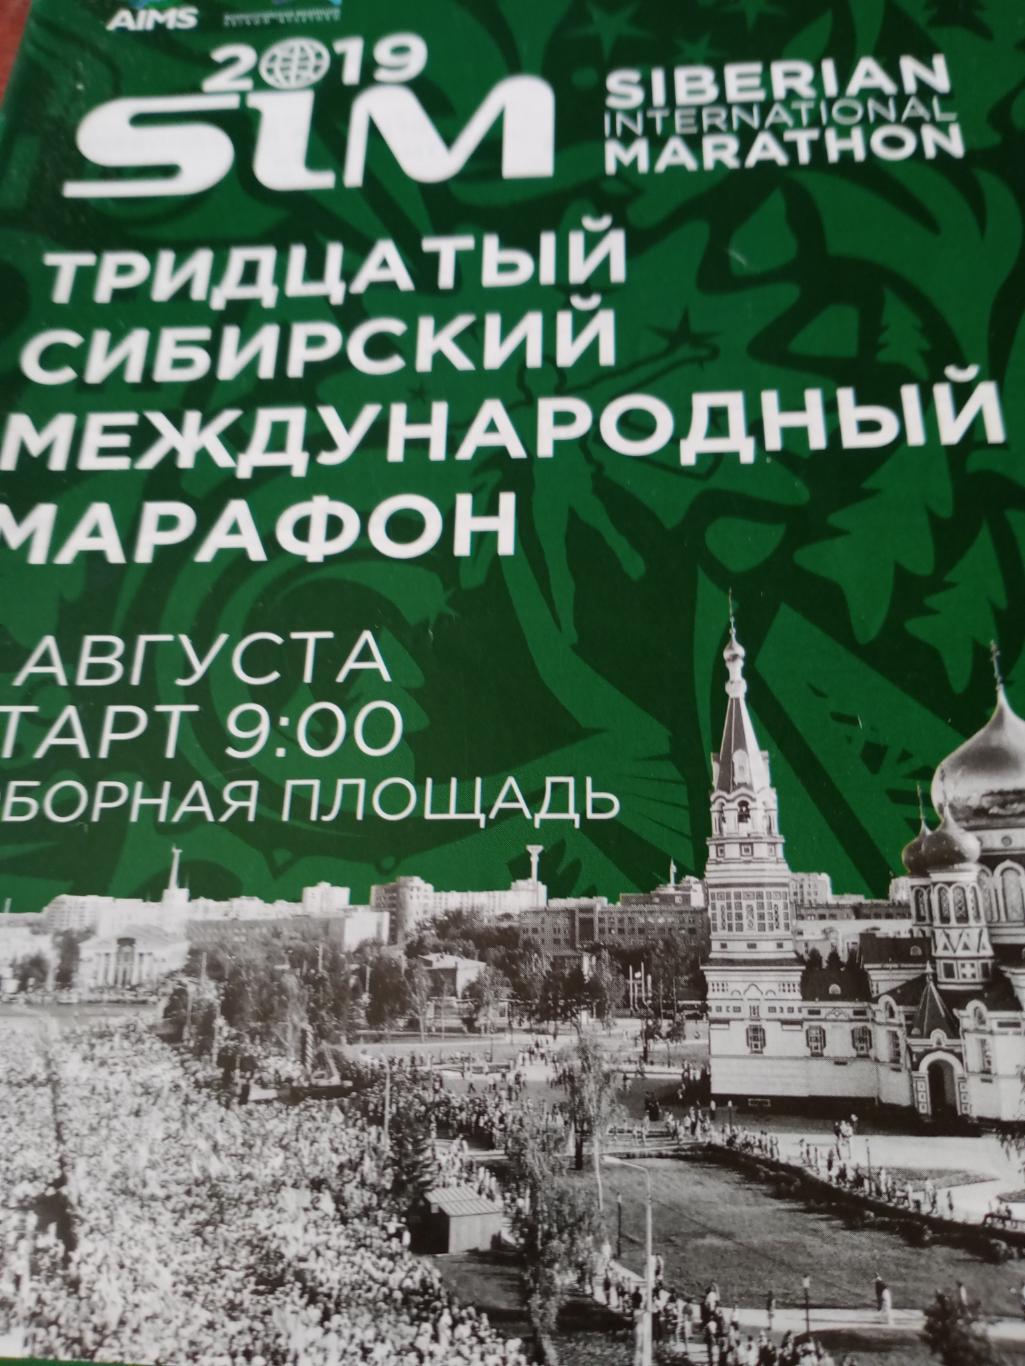 30 Сибирский международный марафон. Омск. 2019 год